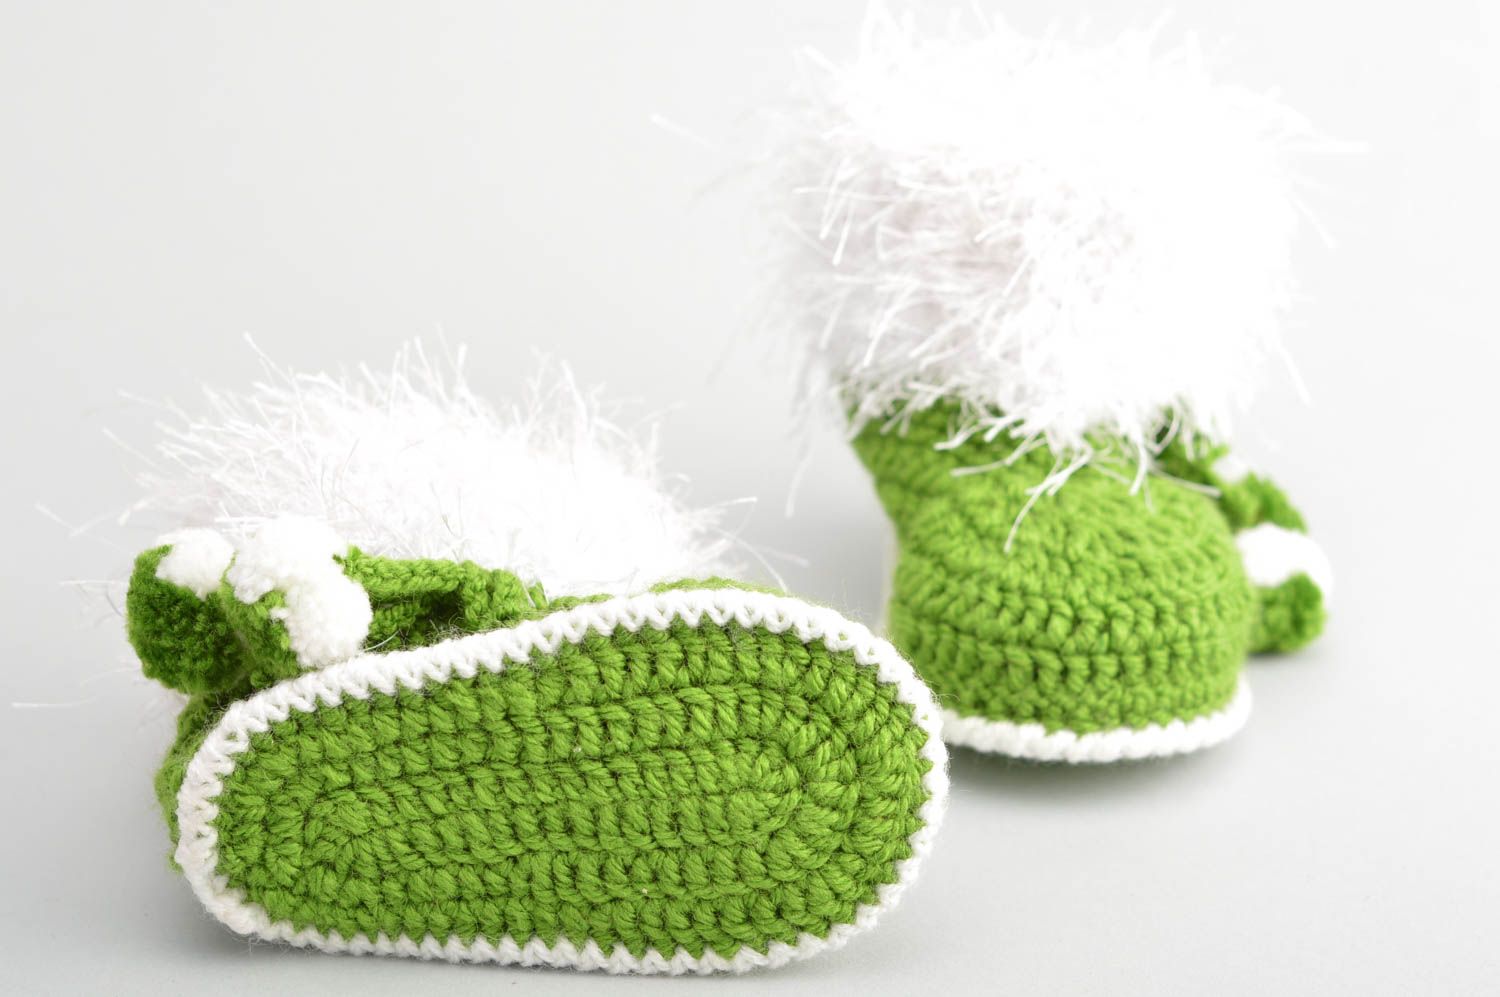 Пинетки для младенцев вязаные крючком из акрила хэнд мэйд зеленые для мальчика фото 4